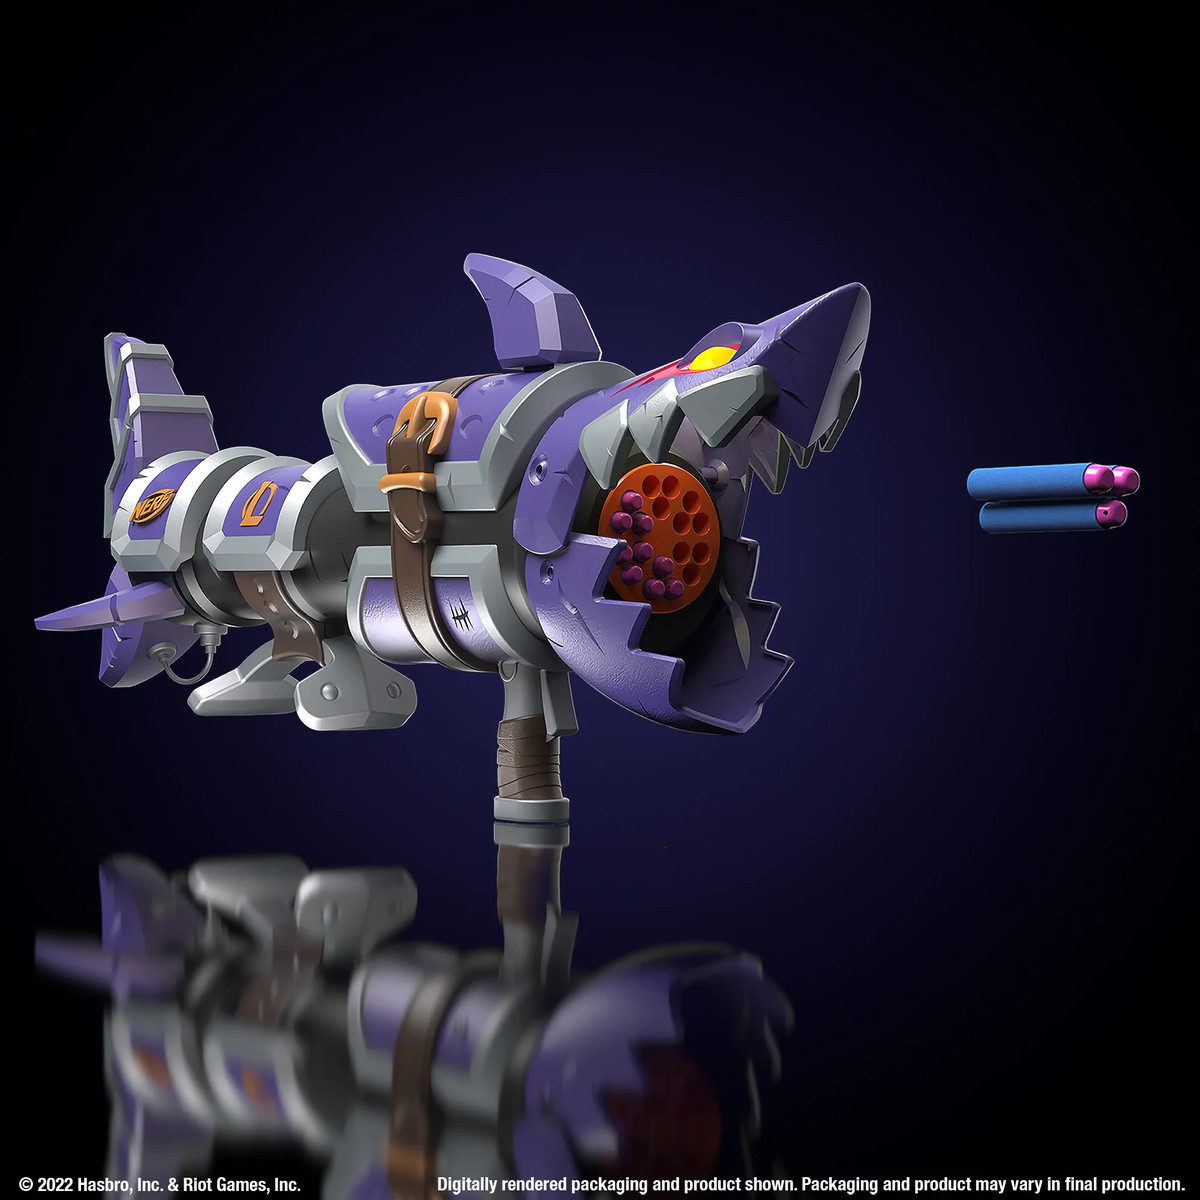 Blaster Nerf LMTD Jinx Fishbones - un lanciarazzi viola, decorato con le mascelle di uno squalo intorno alla canna.  L'arma spara tre dardi Nerf.